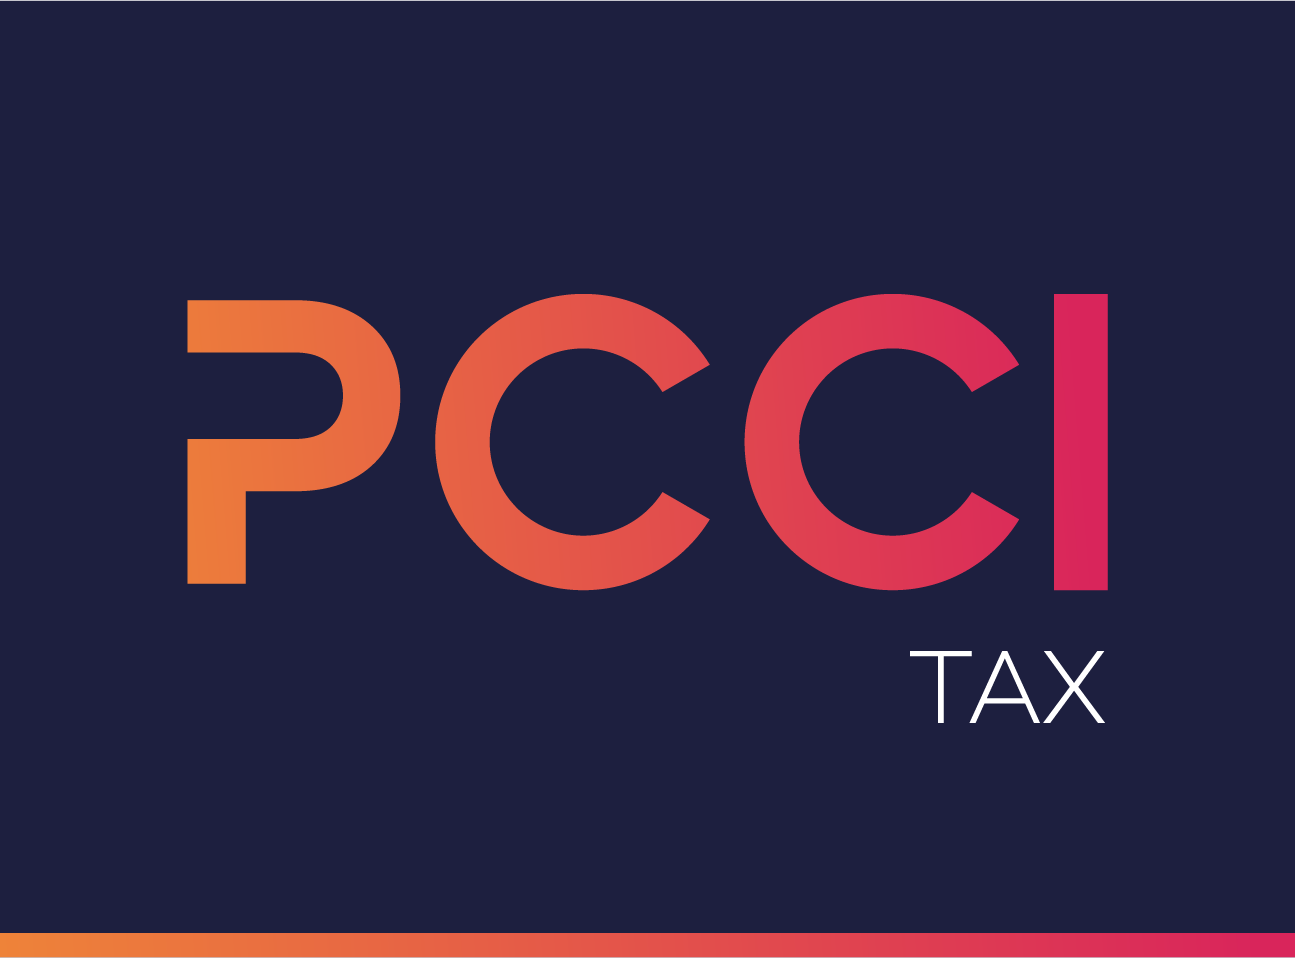 PCCI Tax